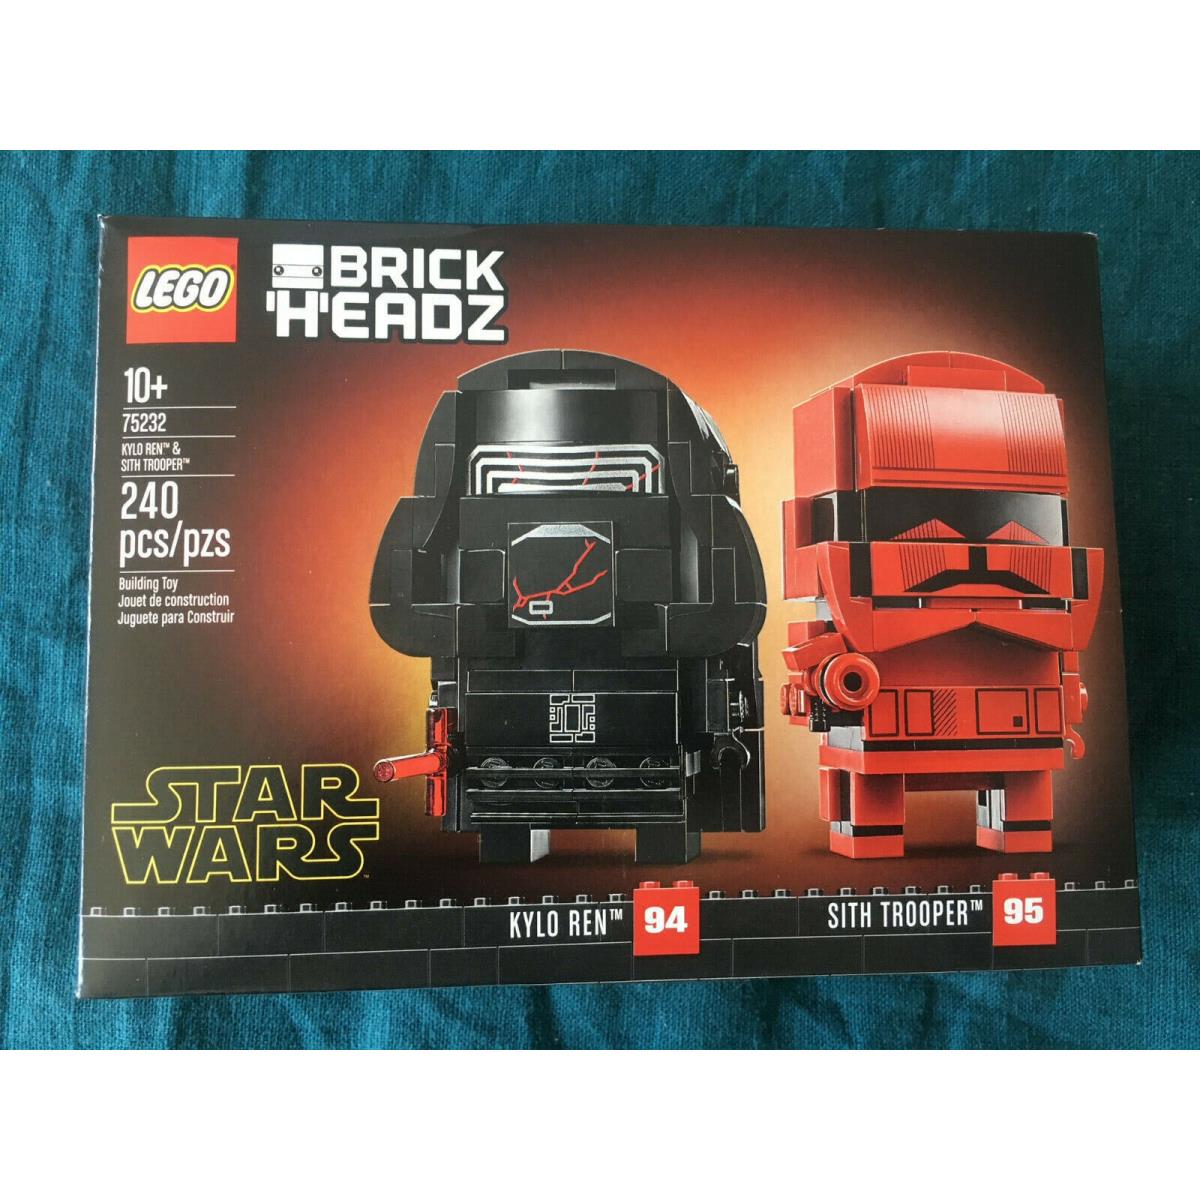 Lego 75232 240 Pcs Star Wars Brick Headz Kylo Ren Sith Trooper